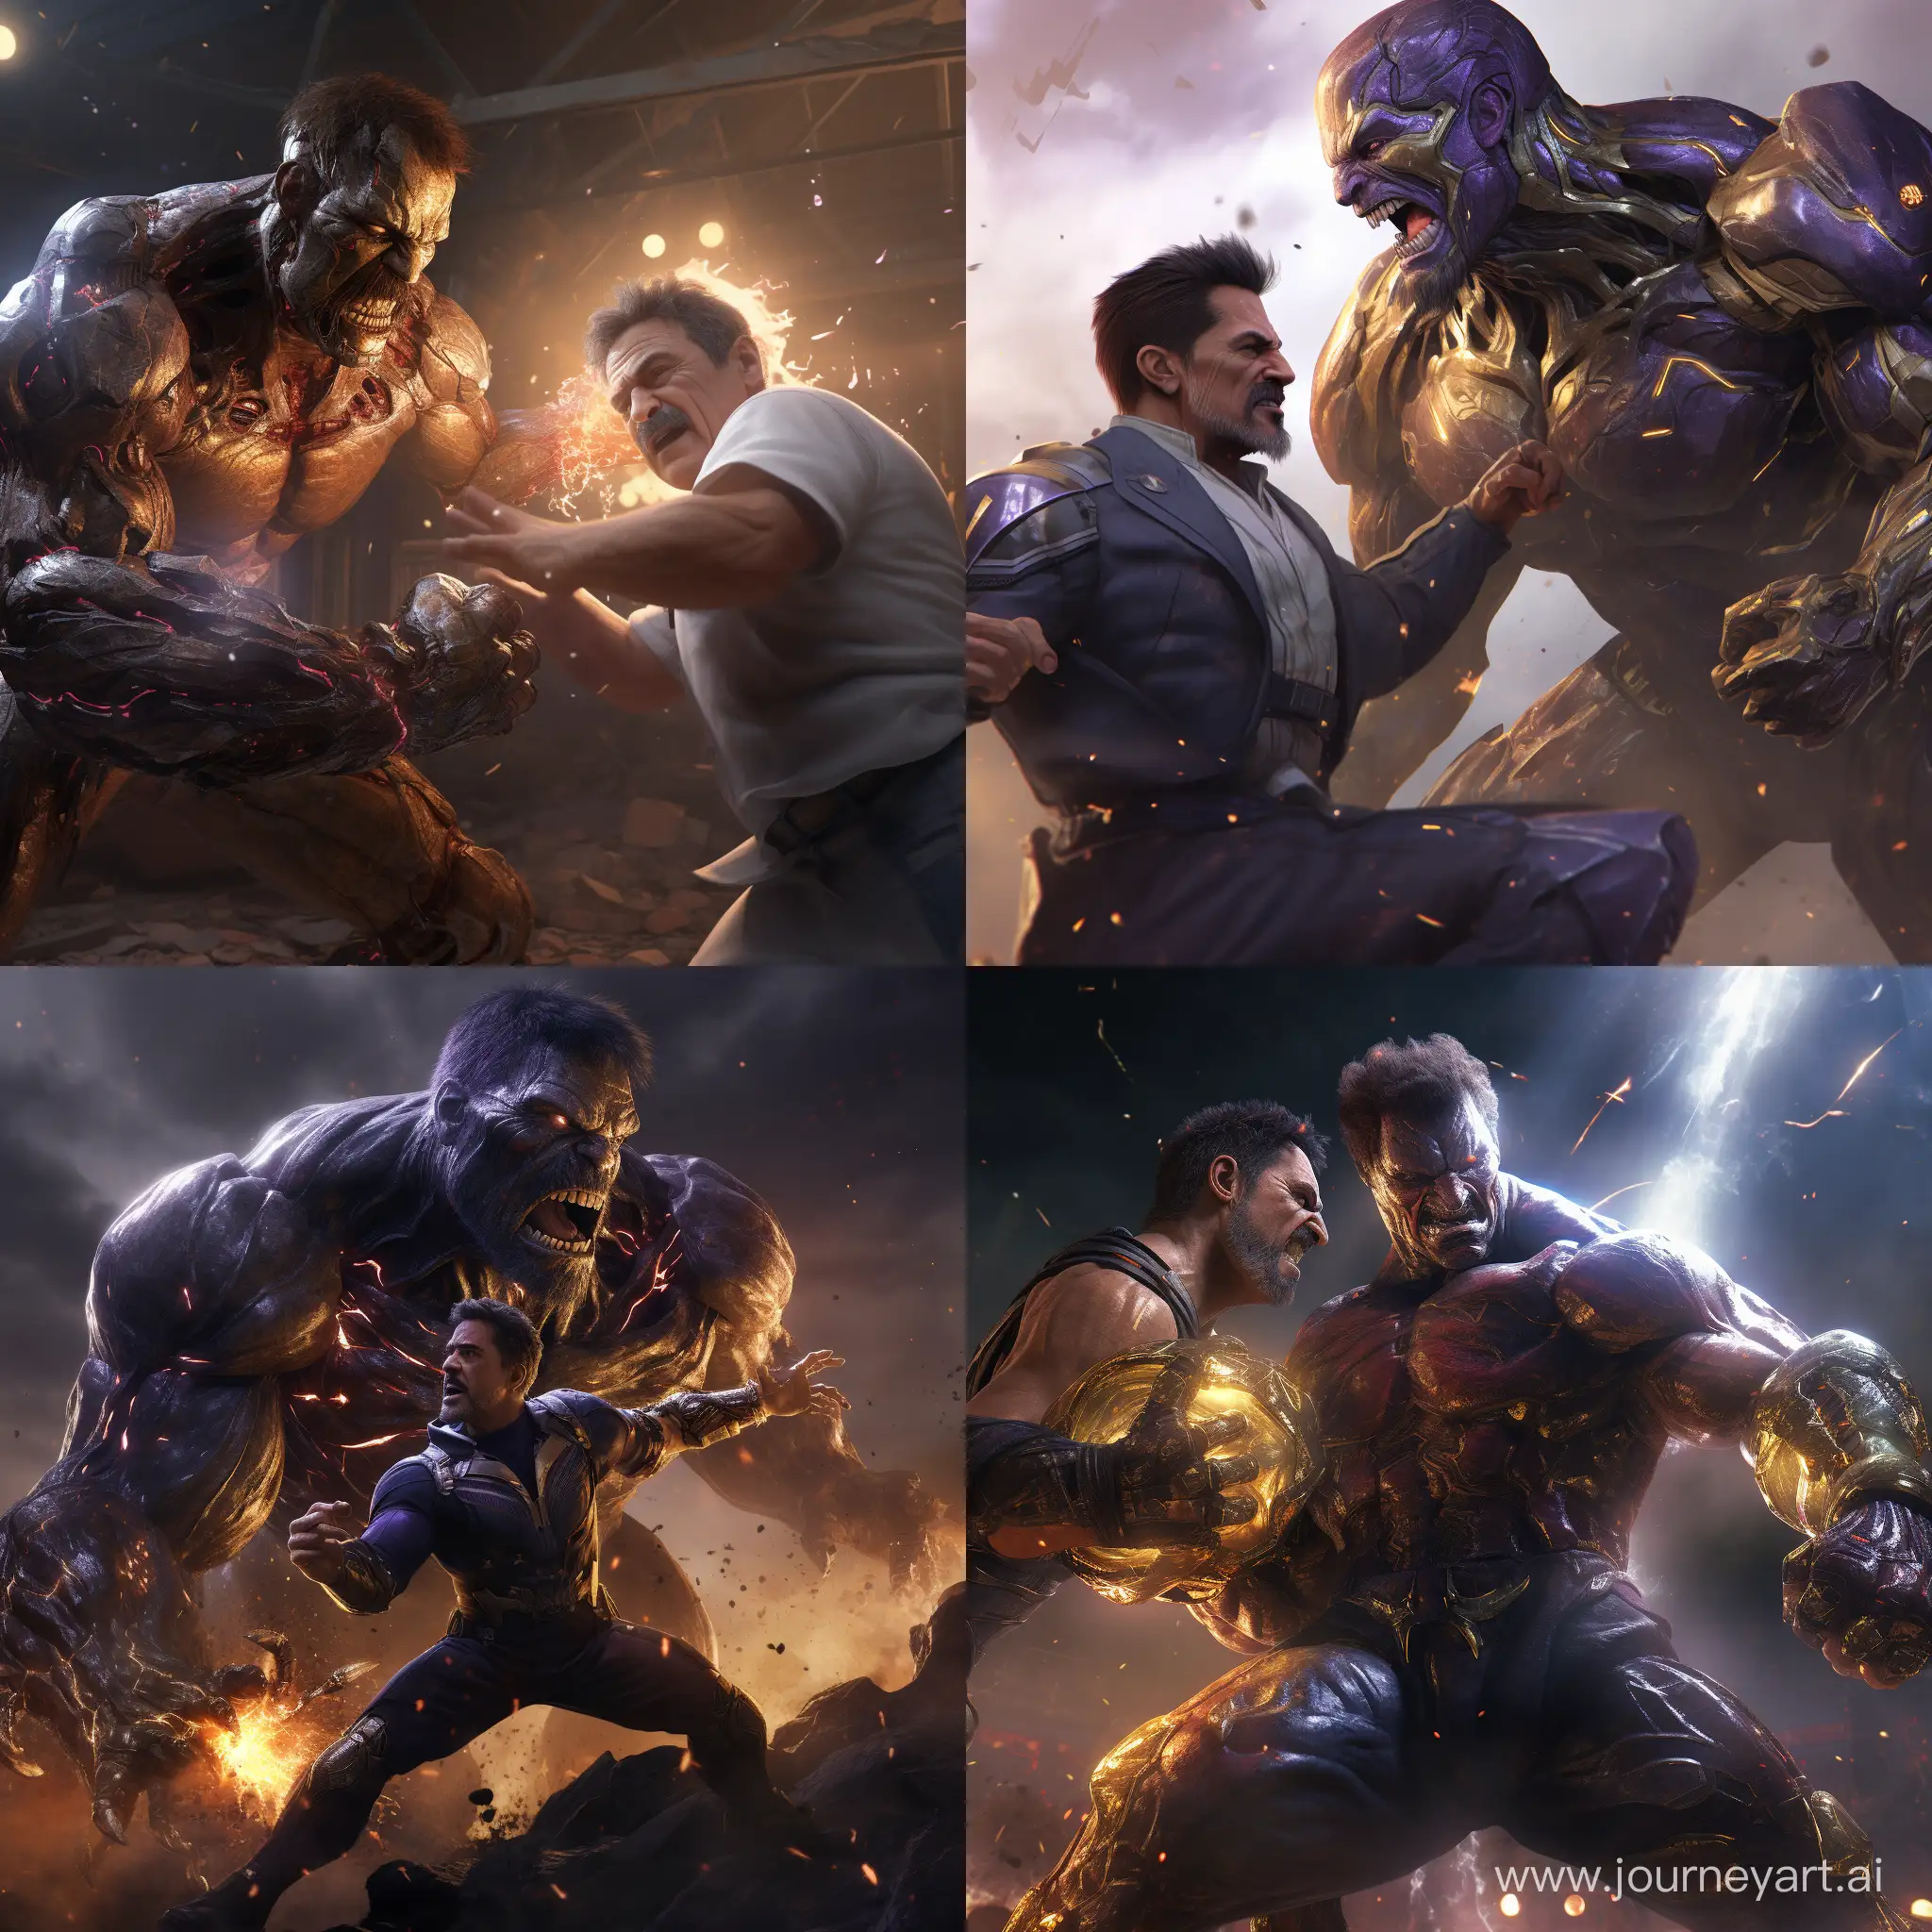 Epic-Battle-Tony-Stark-vs-Thanos-in-Stunning-2k-HDR-4k-Resolution